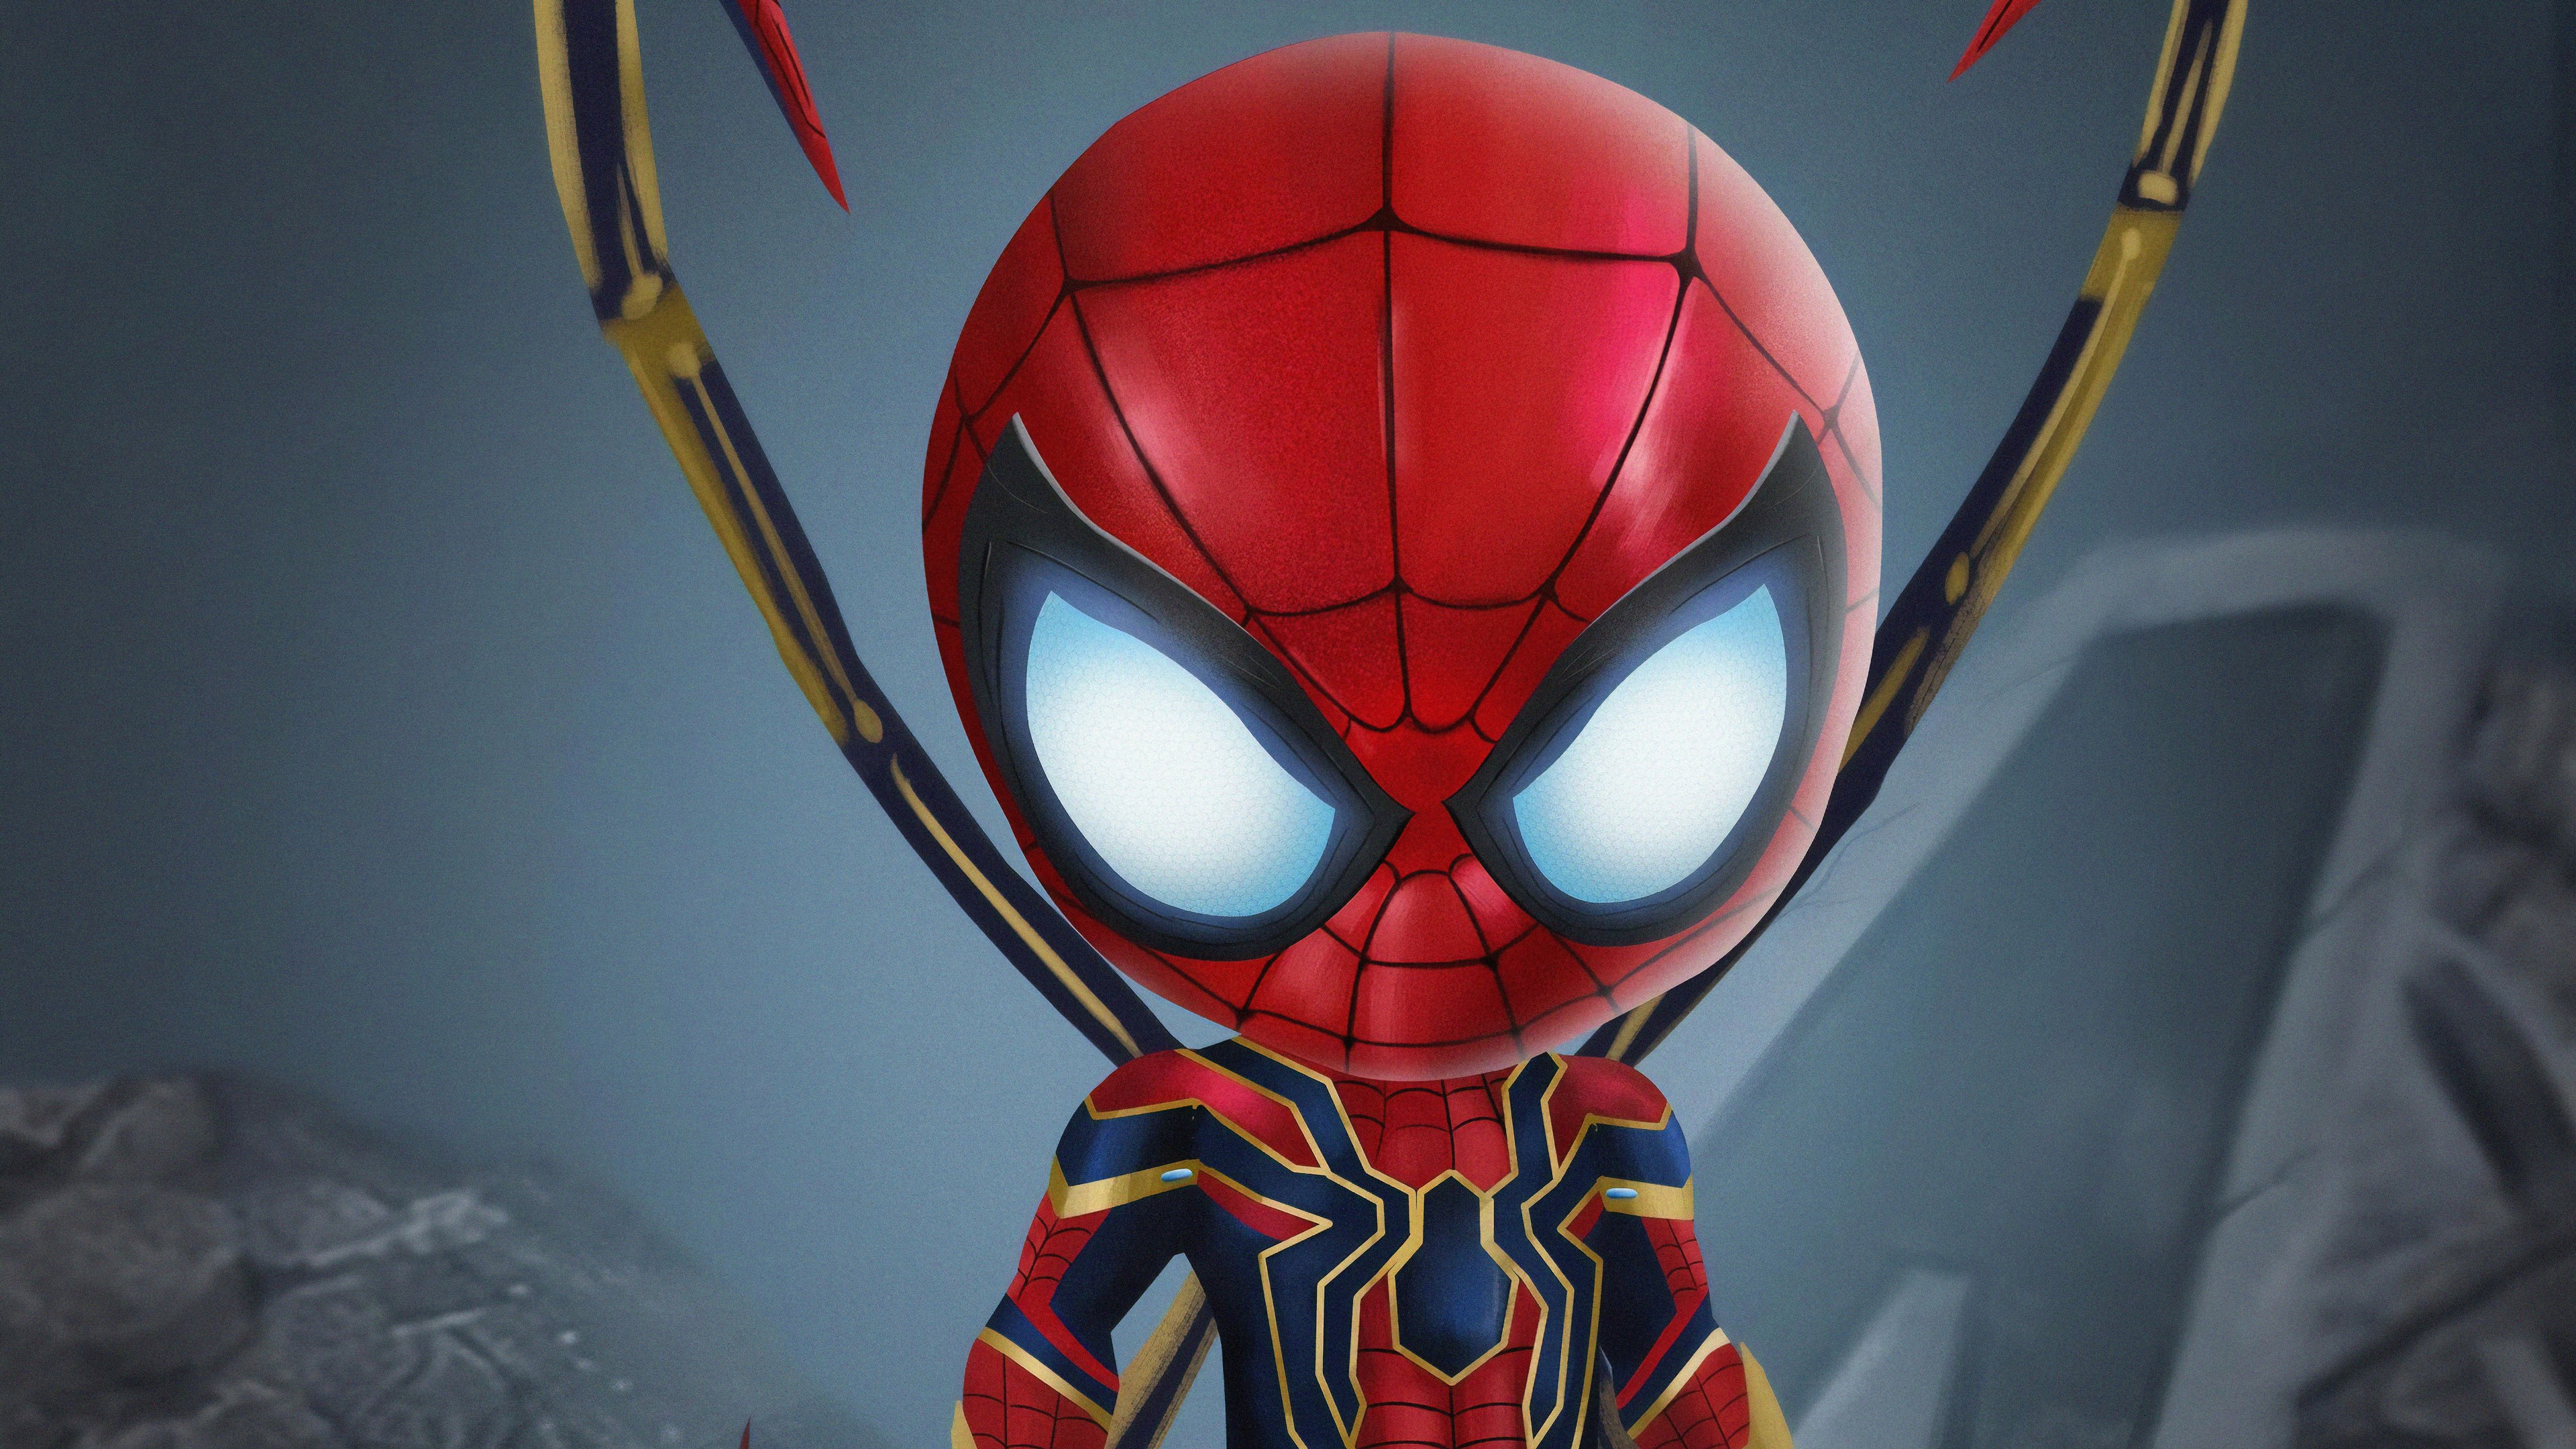 Hình nền người nhện, Spider Man cực ngầu và sành điệu sẽ khiến bạn mê mẩn. Chiếc nền này được thiết kế cực kỳ tinh tế, rất thích hợp để dùng làm hình nền cho điện thoại hoặc máy tính của bạn.